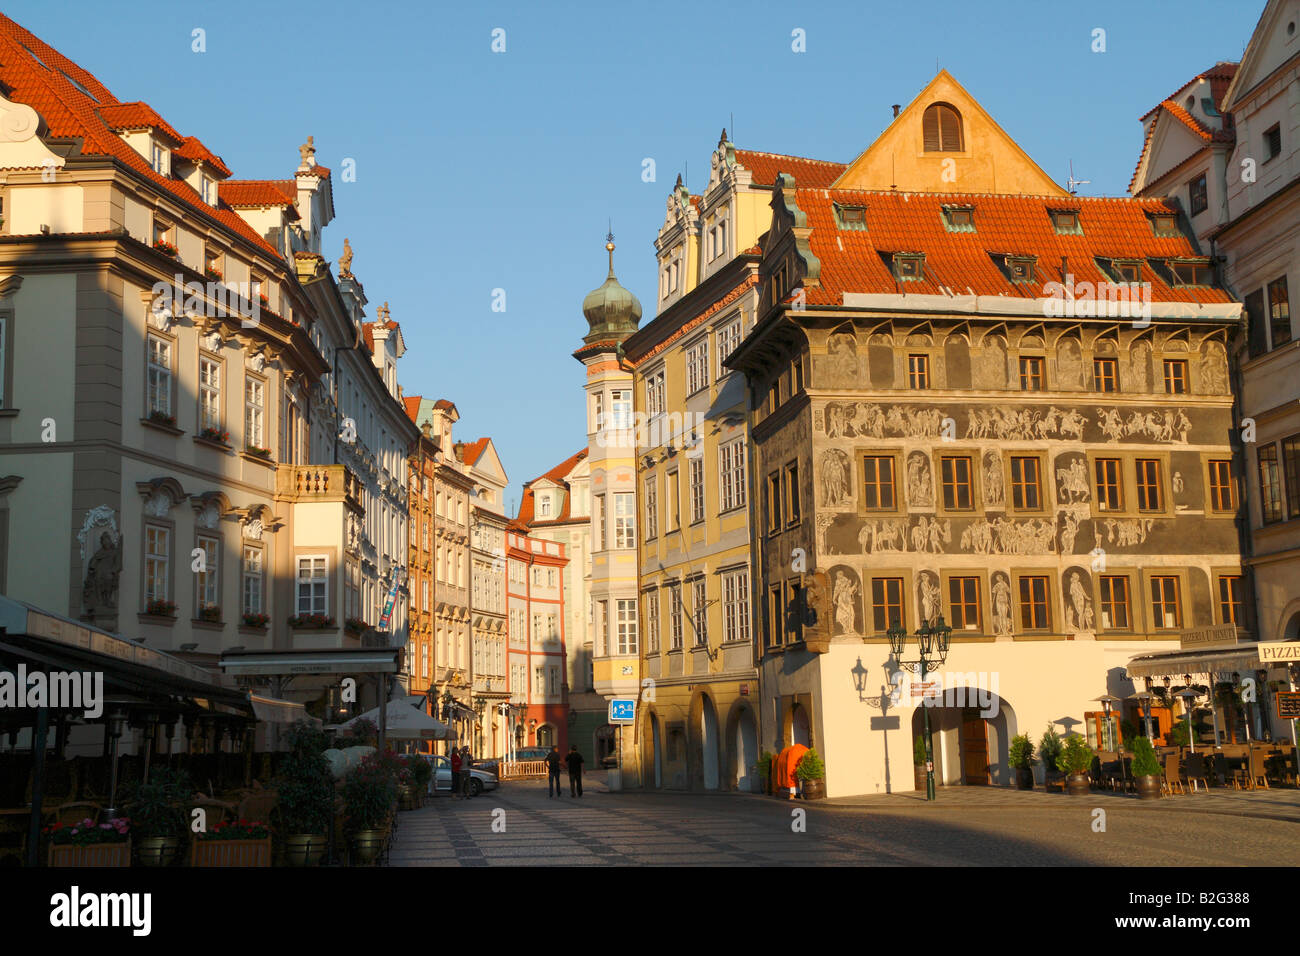 Die am frühen Morgen Blick auf den kleinen Platz in Prag mit Gebäude mit gotischen Malereien verziert Stockfoto